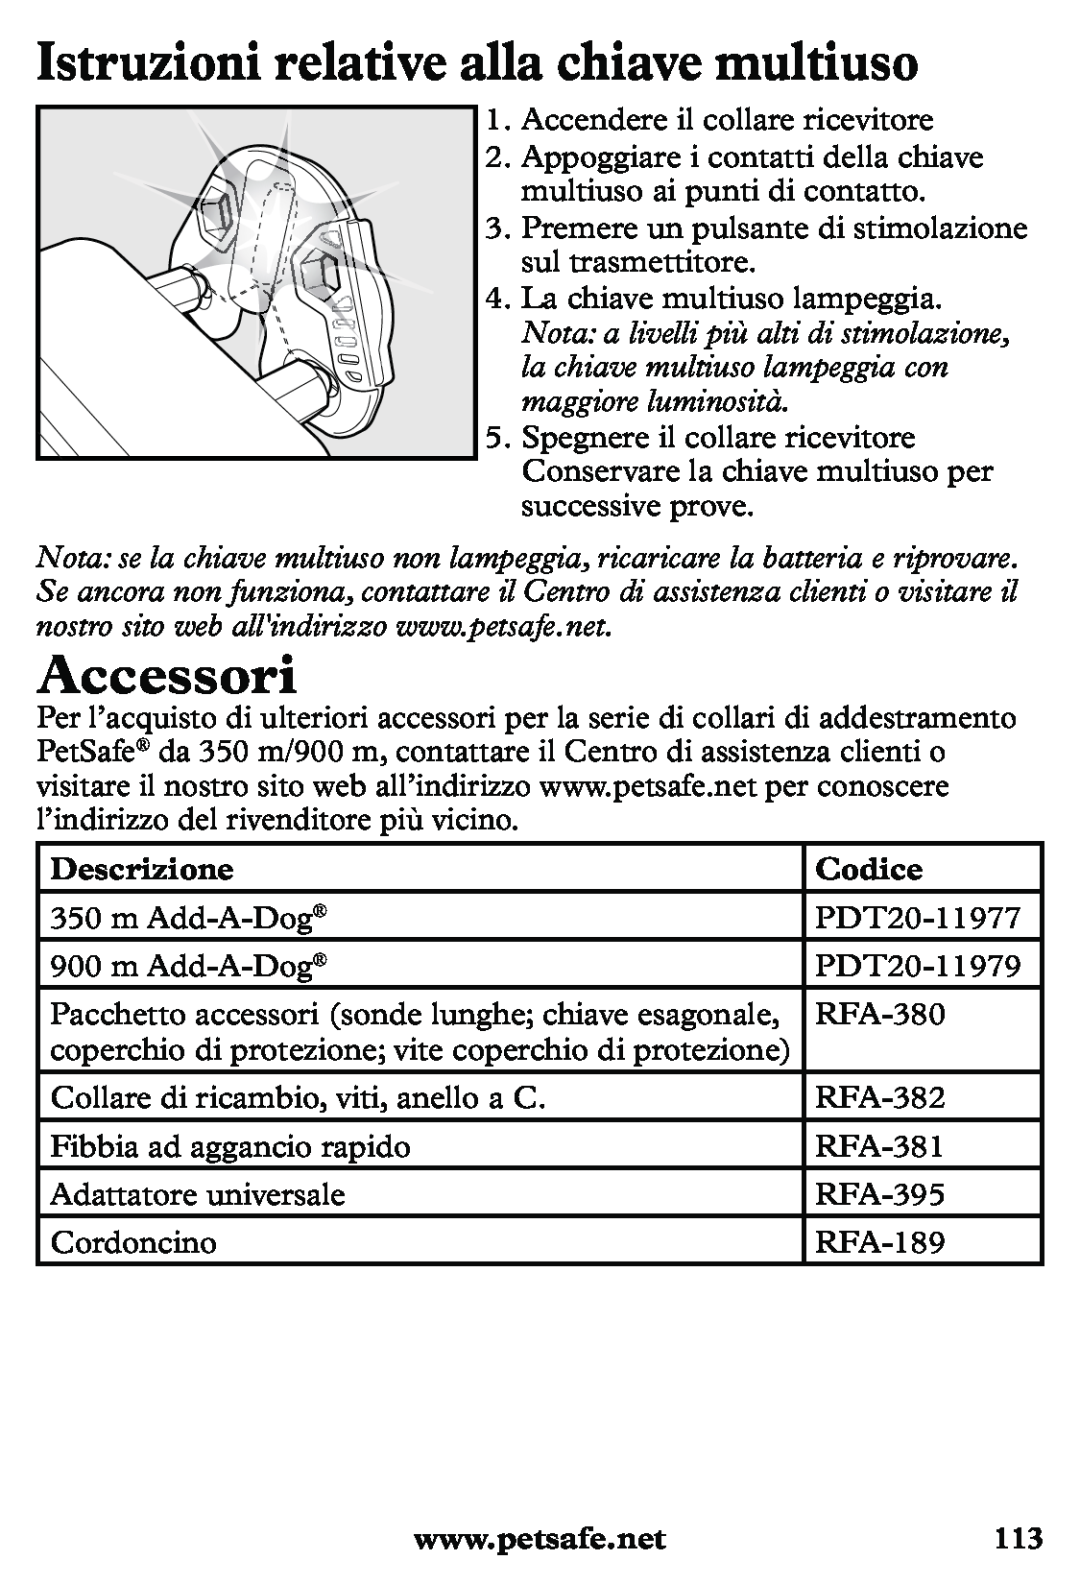 Petsafe PDT20-11939 manuel dutilisation Istruzioni relative alla chiave multiuso, Accessori, Descrizione, Codice 